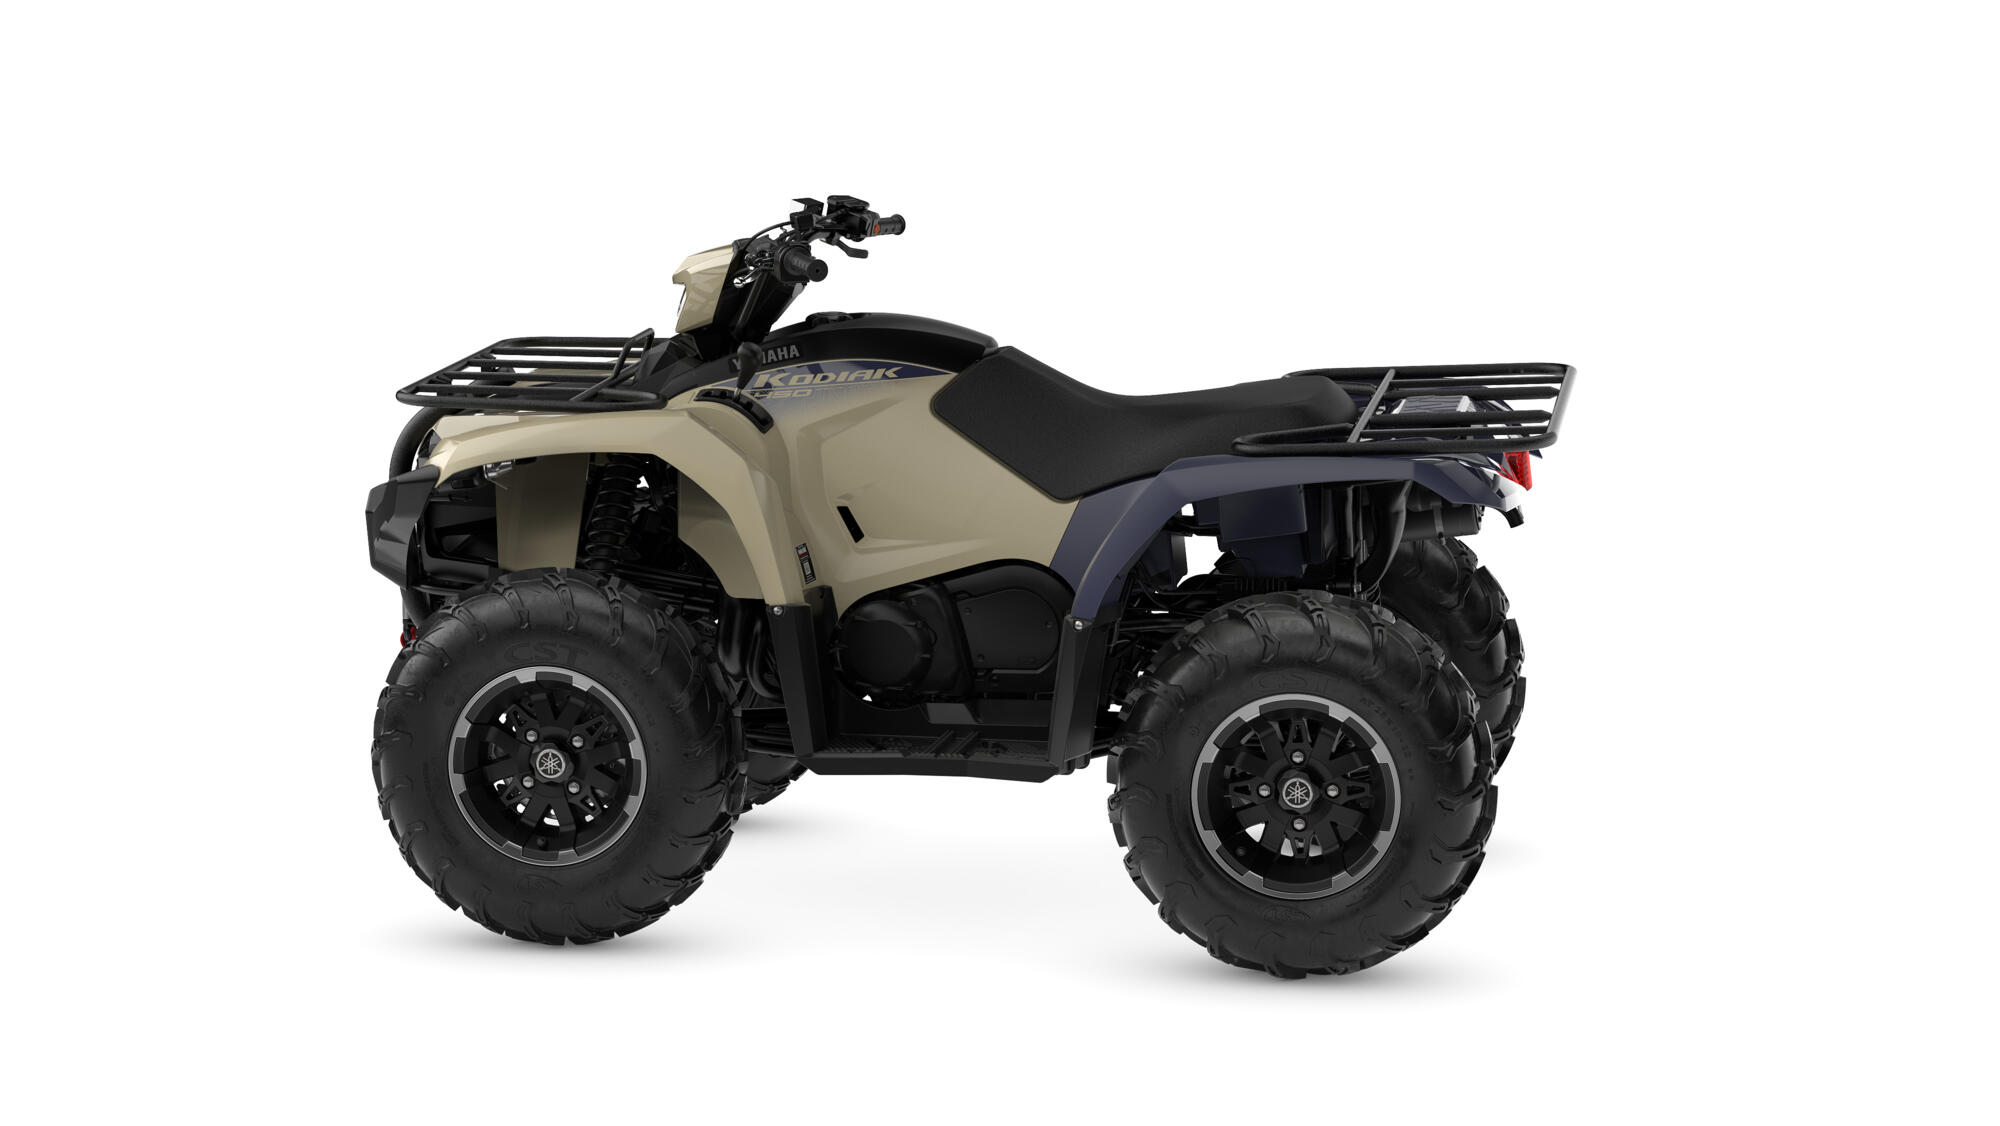 Podizanje dizajna ATV vozila srednje veličine na novi nivo